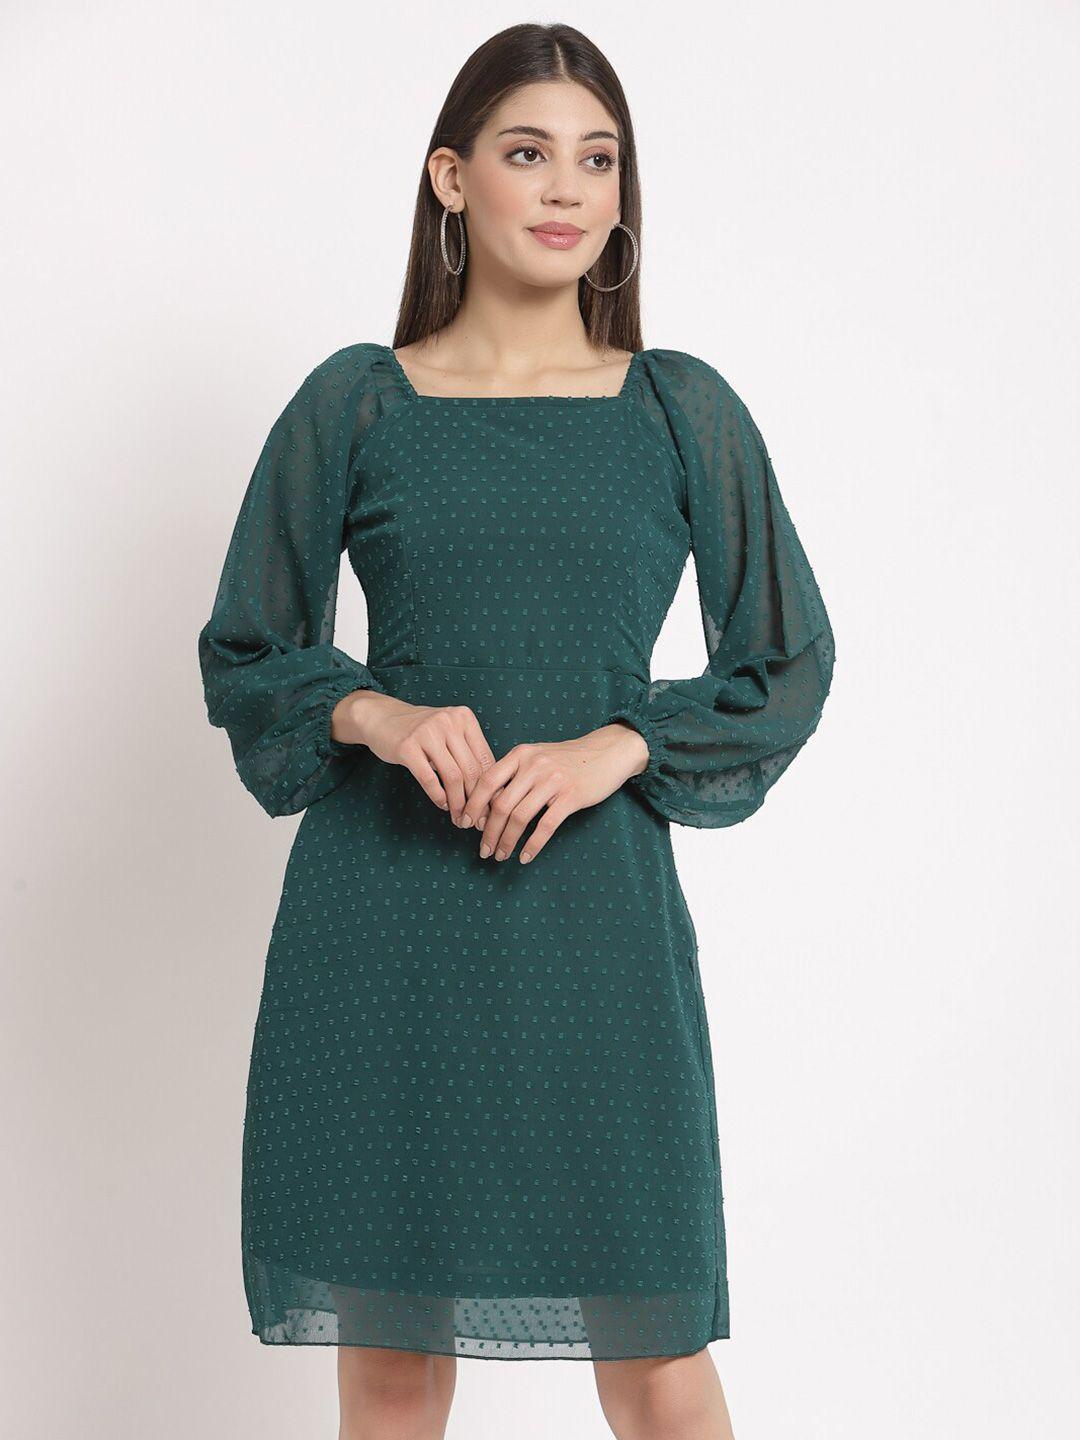 aayu women green georgette a-line dress